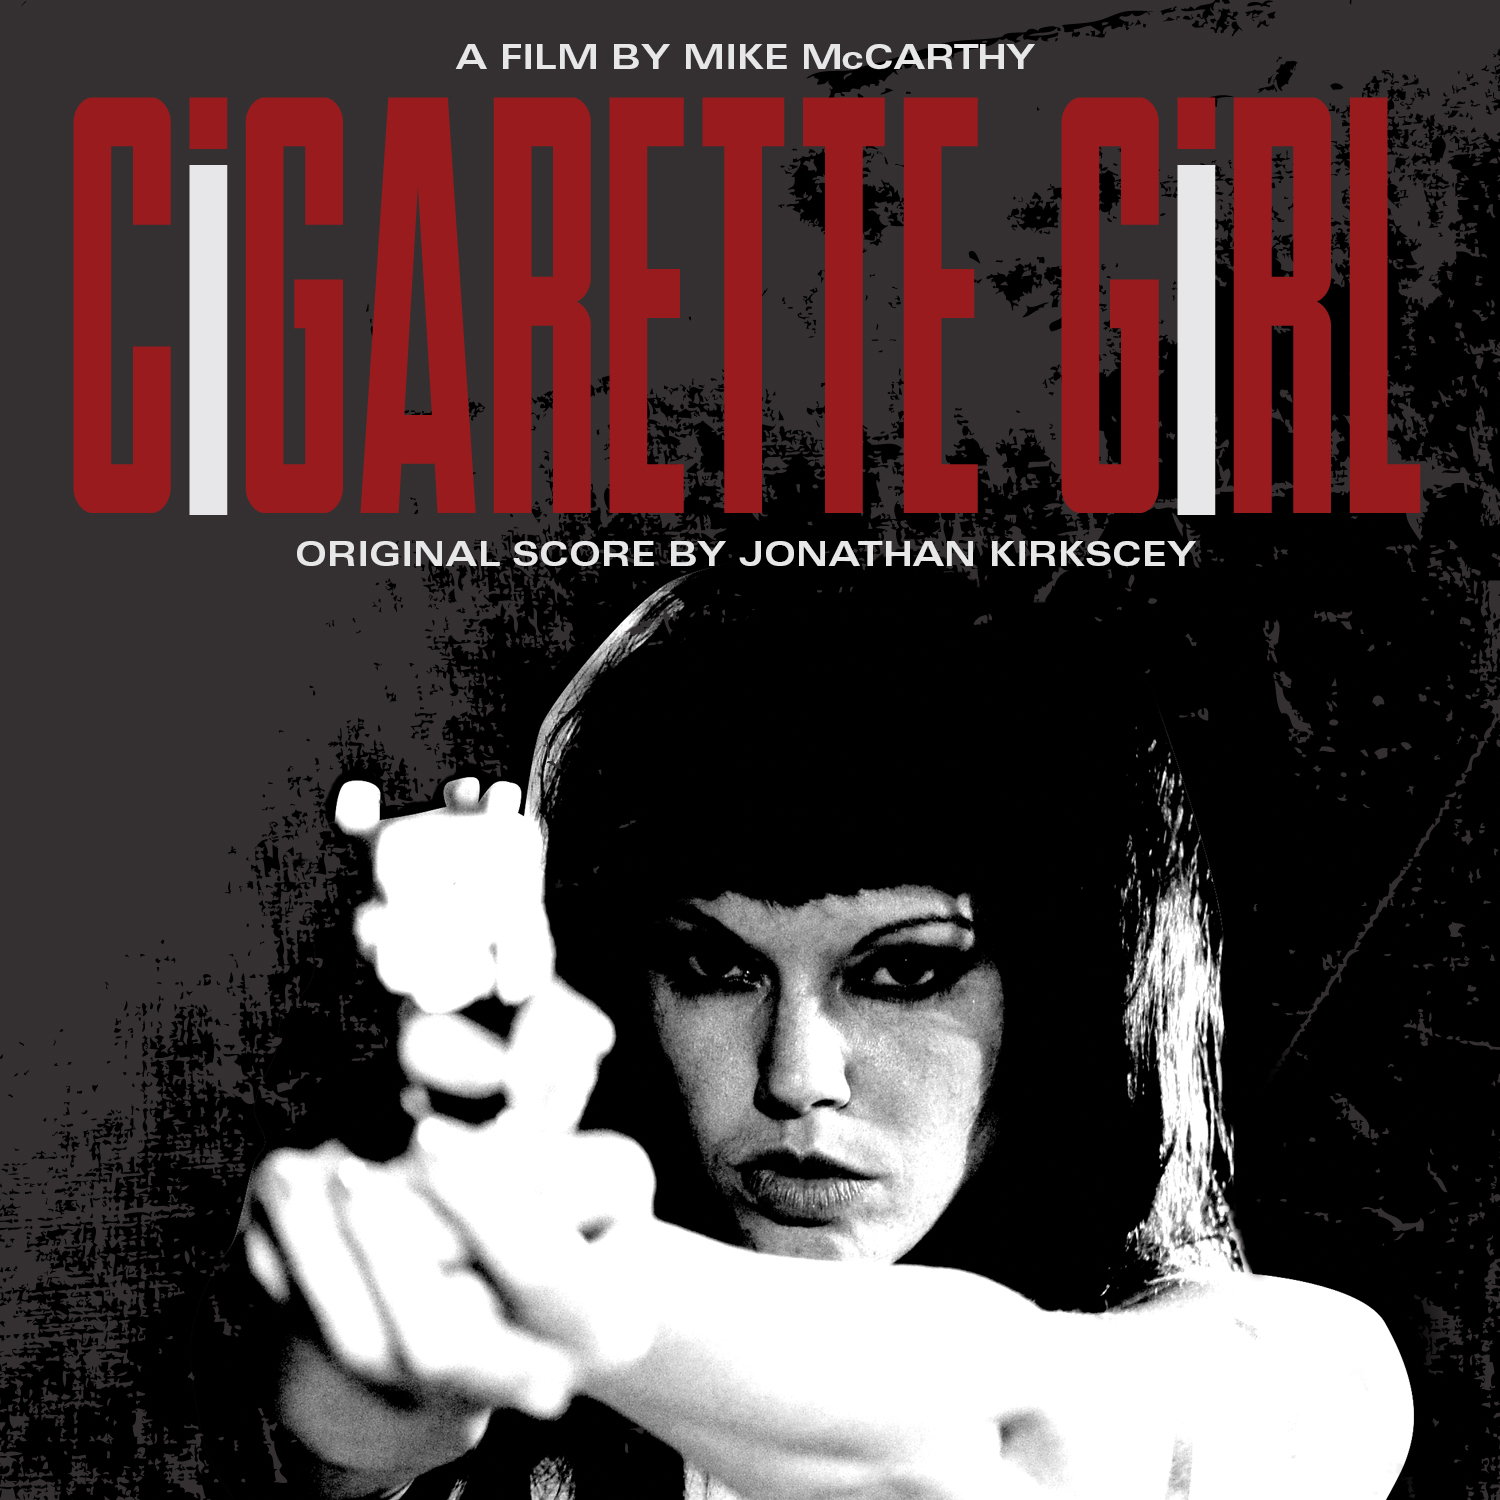 Cigarette Girl (DVD)